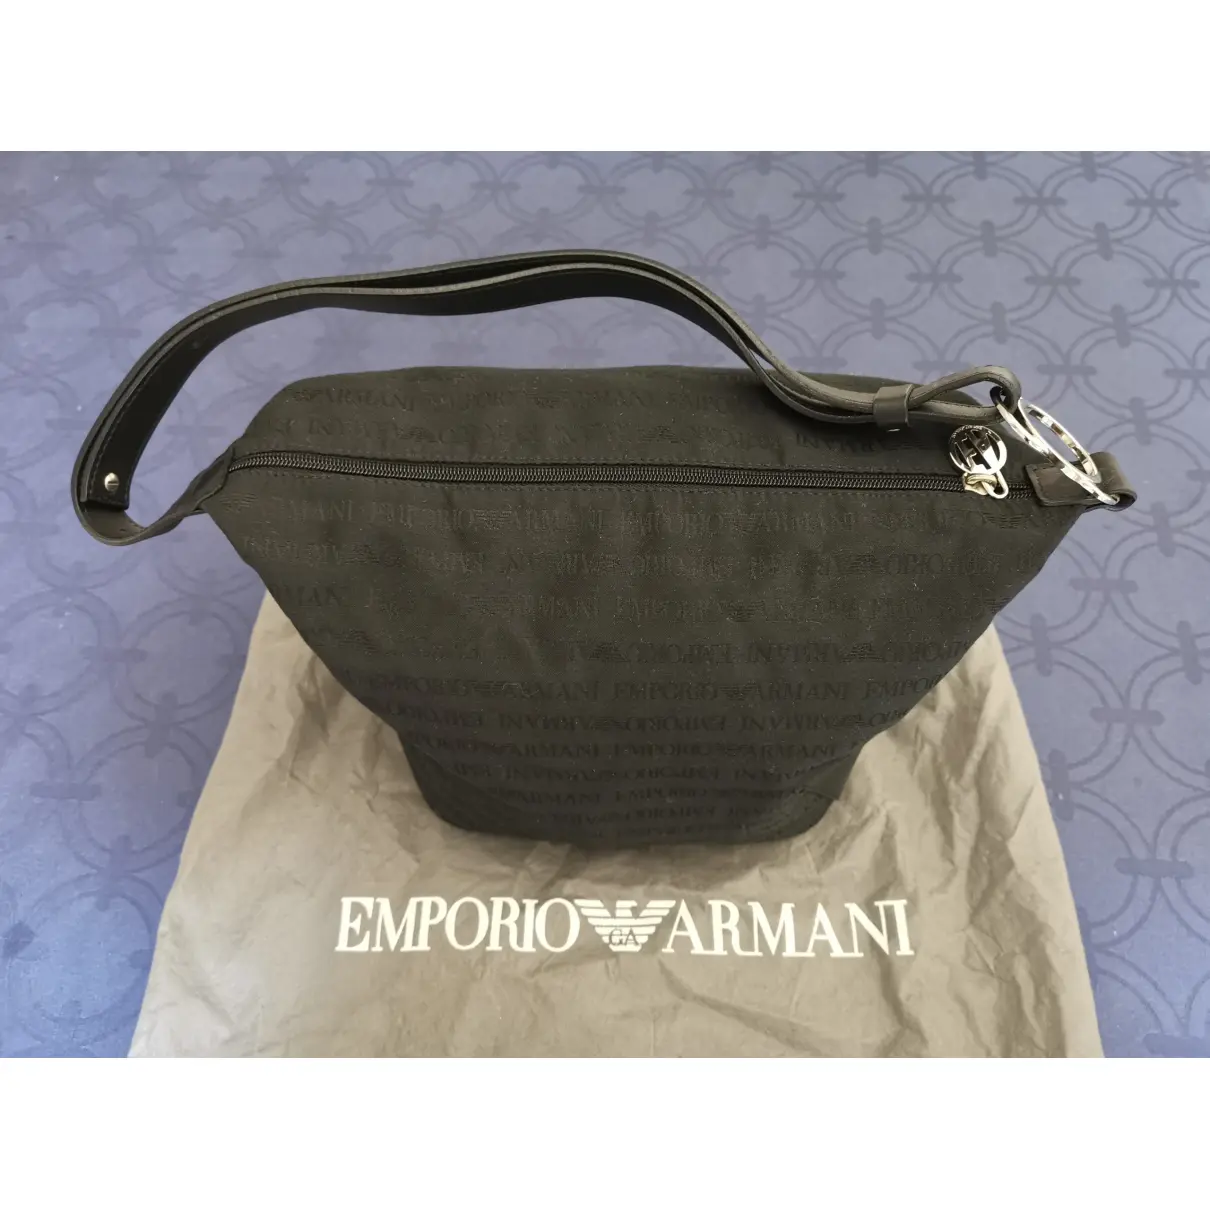 Buy Emporio Armani Cloth handbag online